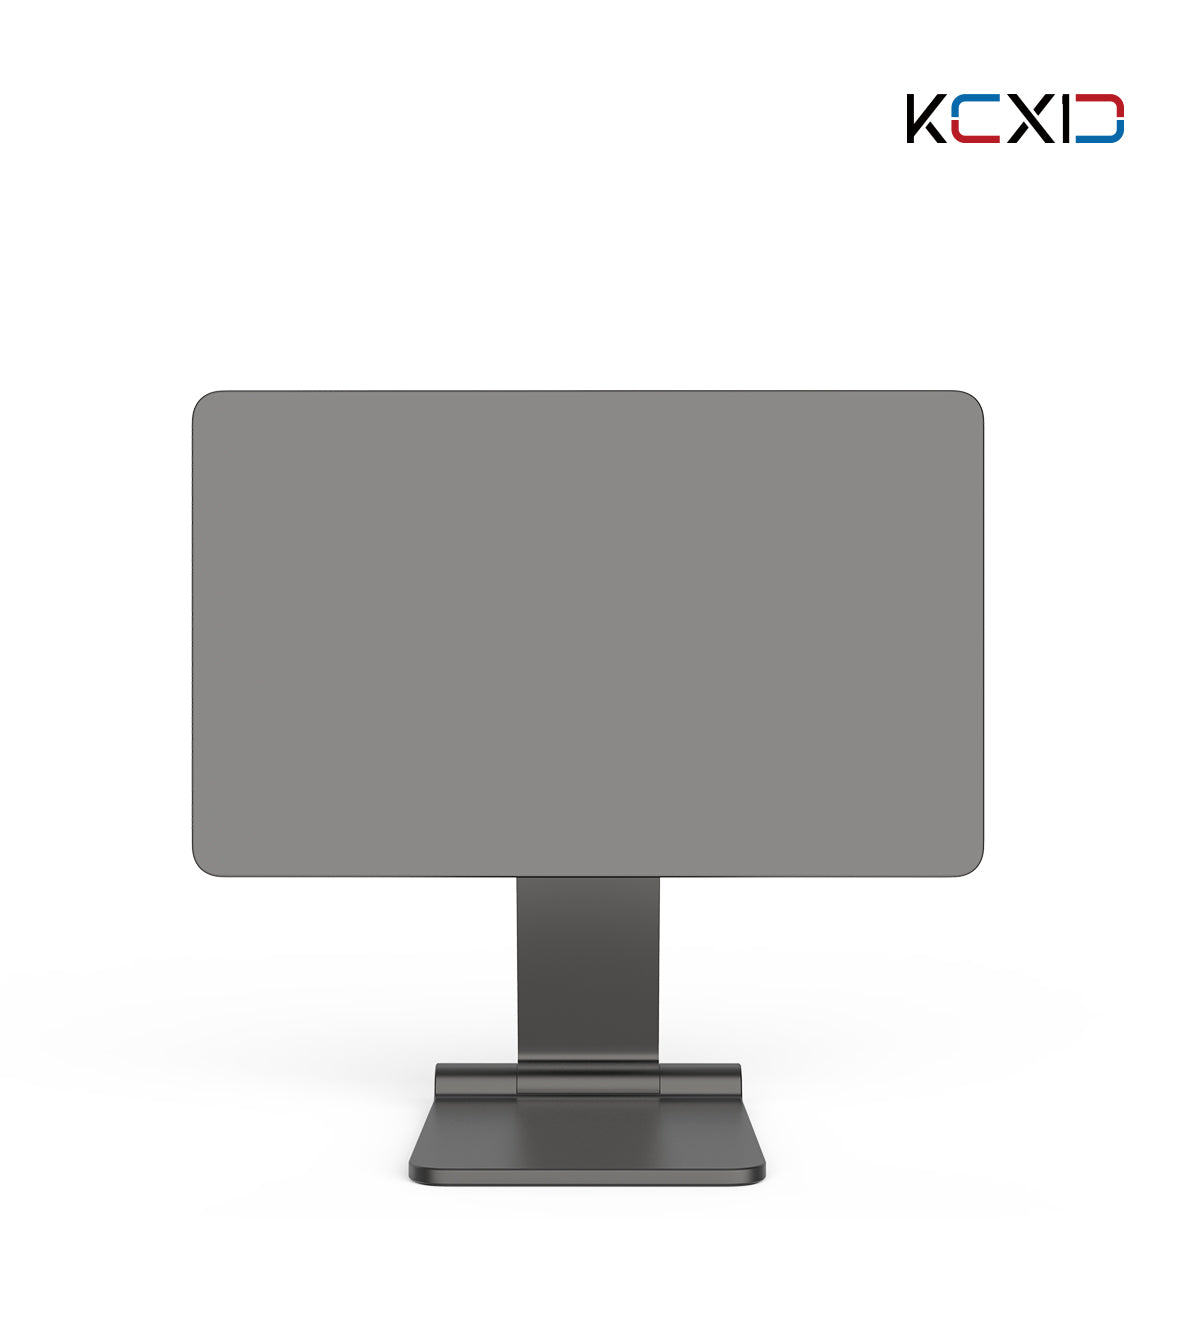 Magnetyczny składany stojak na iPada KUXIU X33